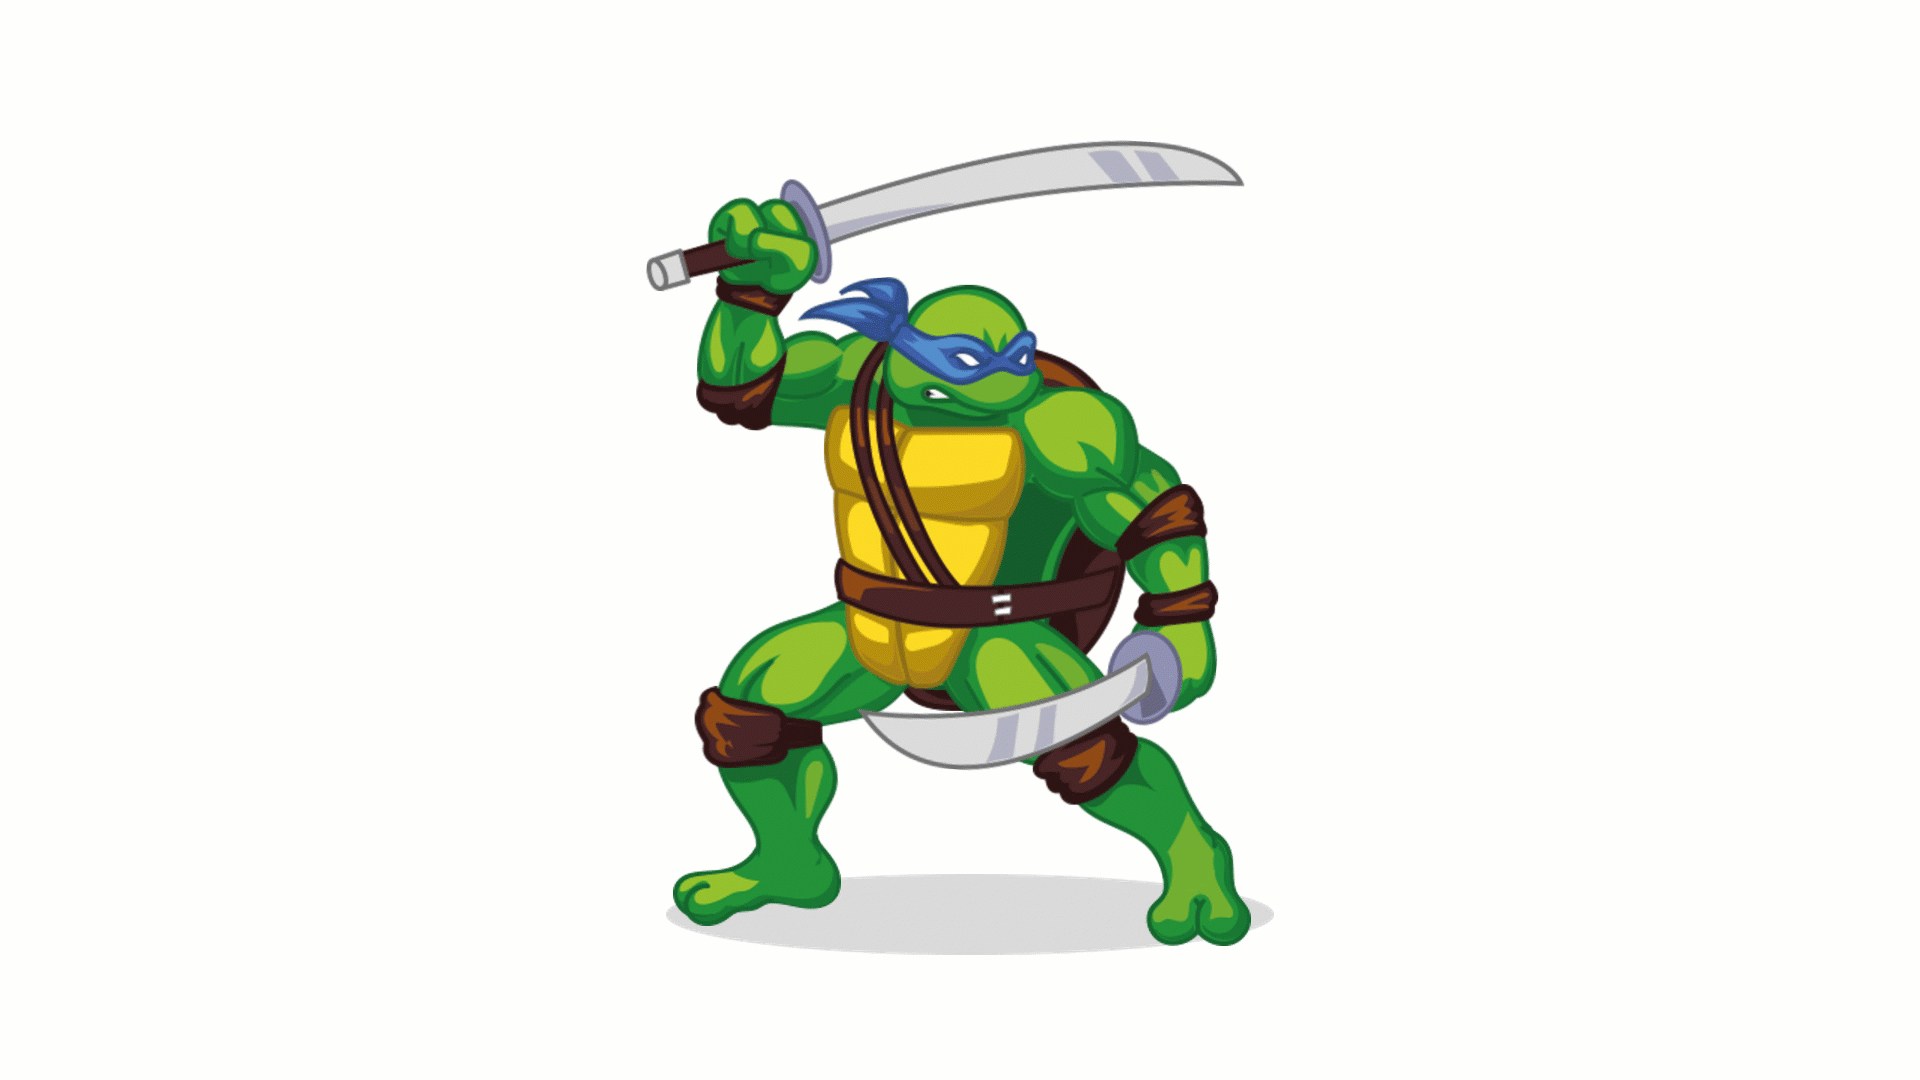 Leonardo from Teenage Mutant Ninja Turtles